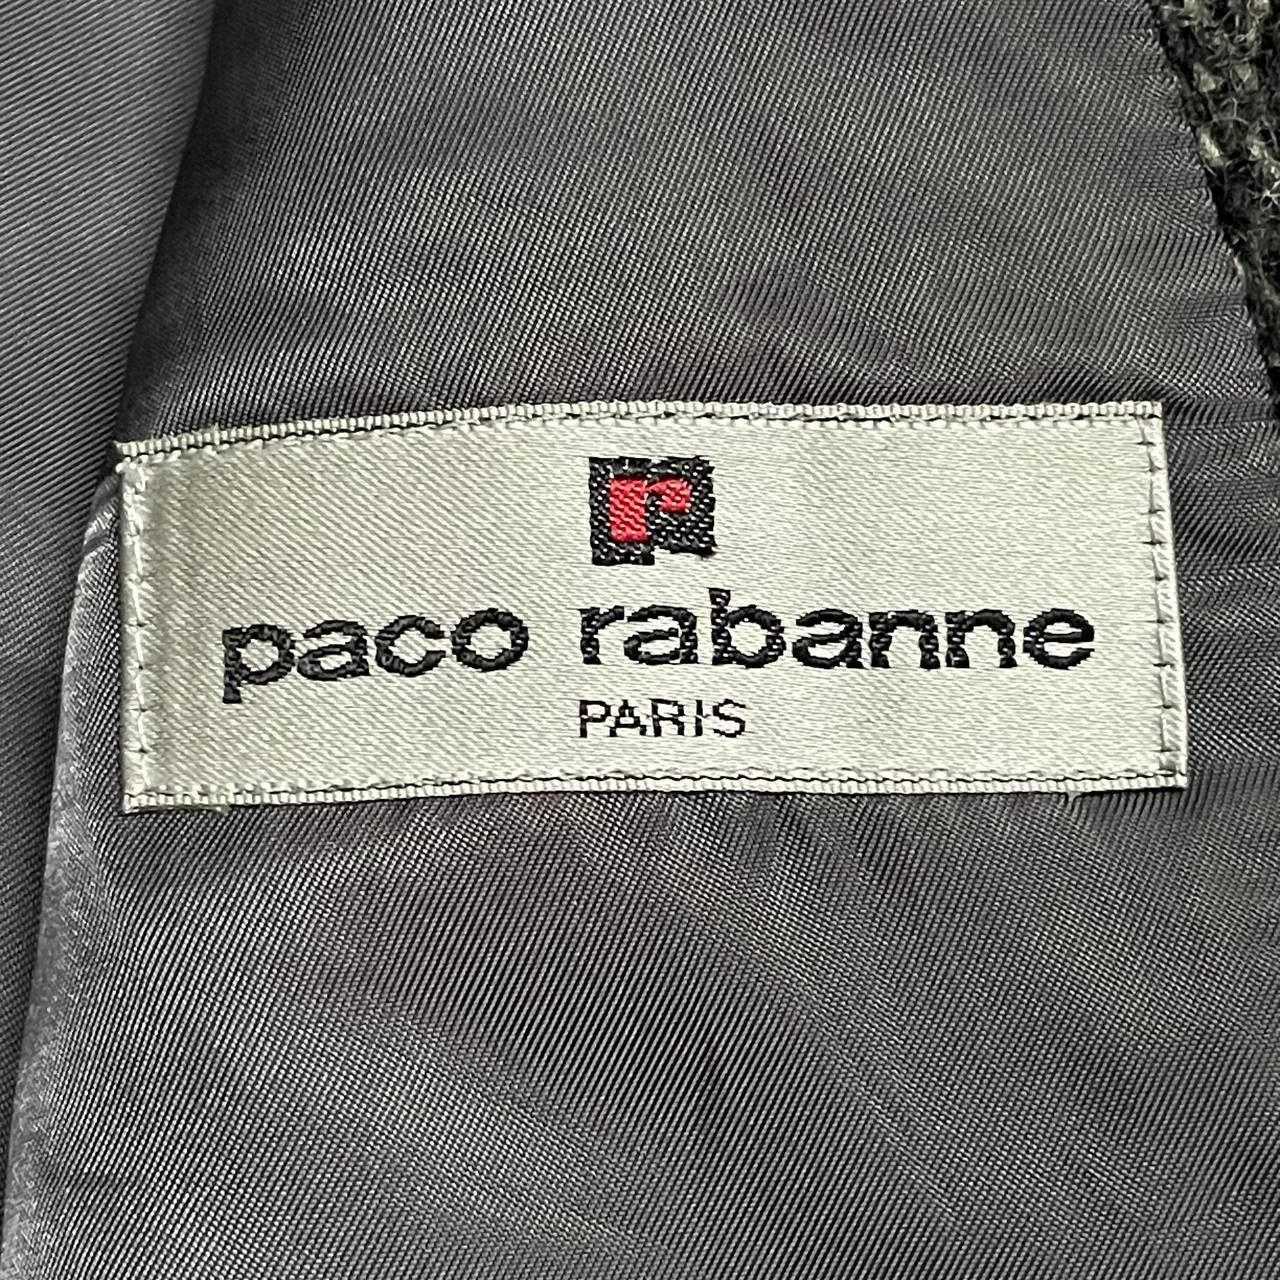 Vintage Paco Rabanne Paris Wool Coat - 8